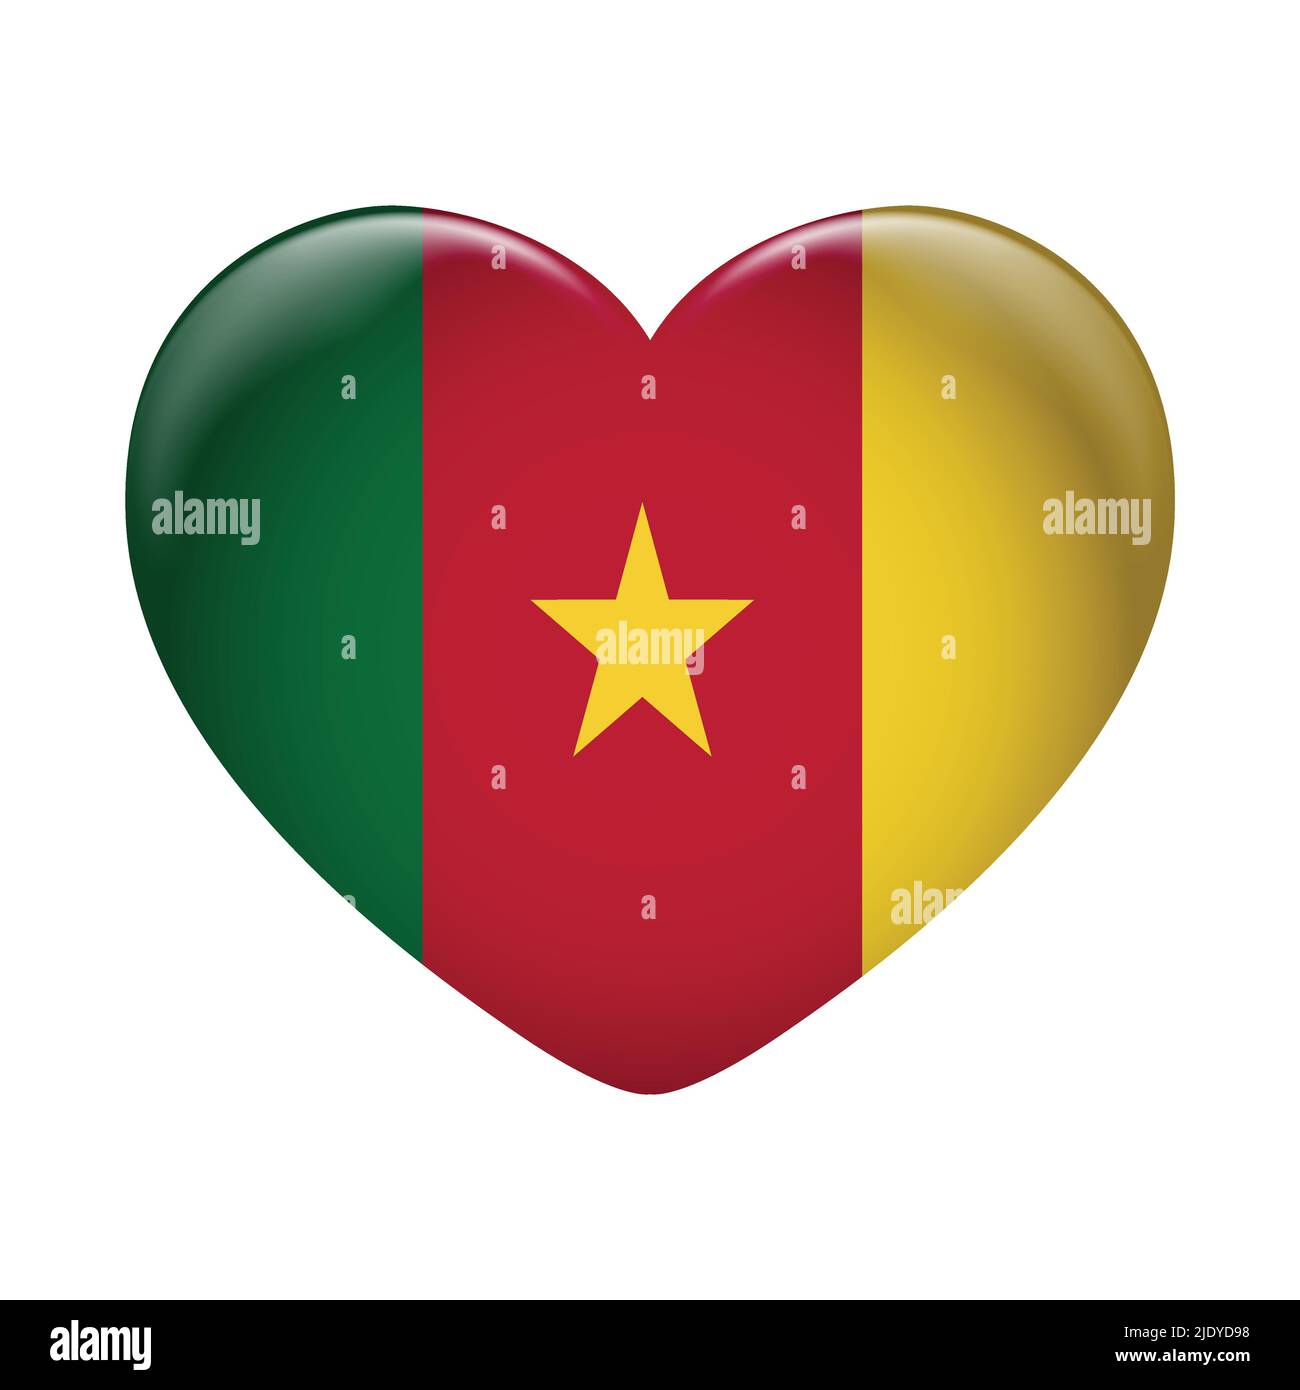 Kamerun Flaggensymbol isoliert auf weißem Hintergrund. Kamerun-Flagge. Flaggensymbol glänzend. Stock Vektor